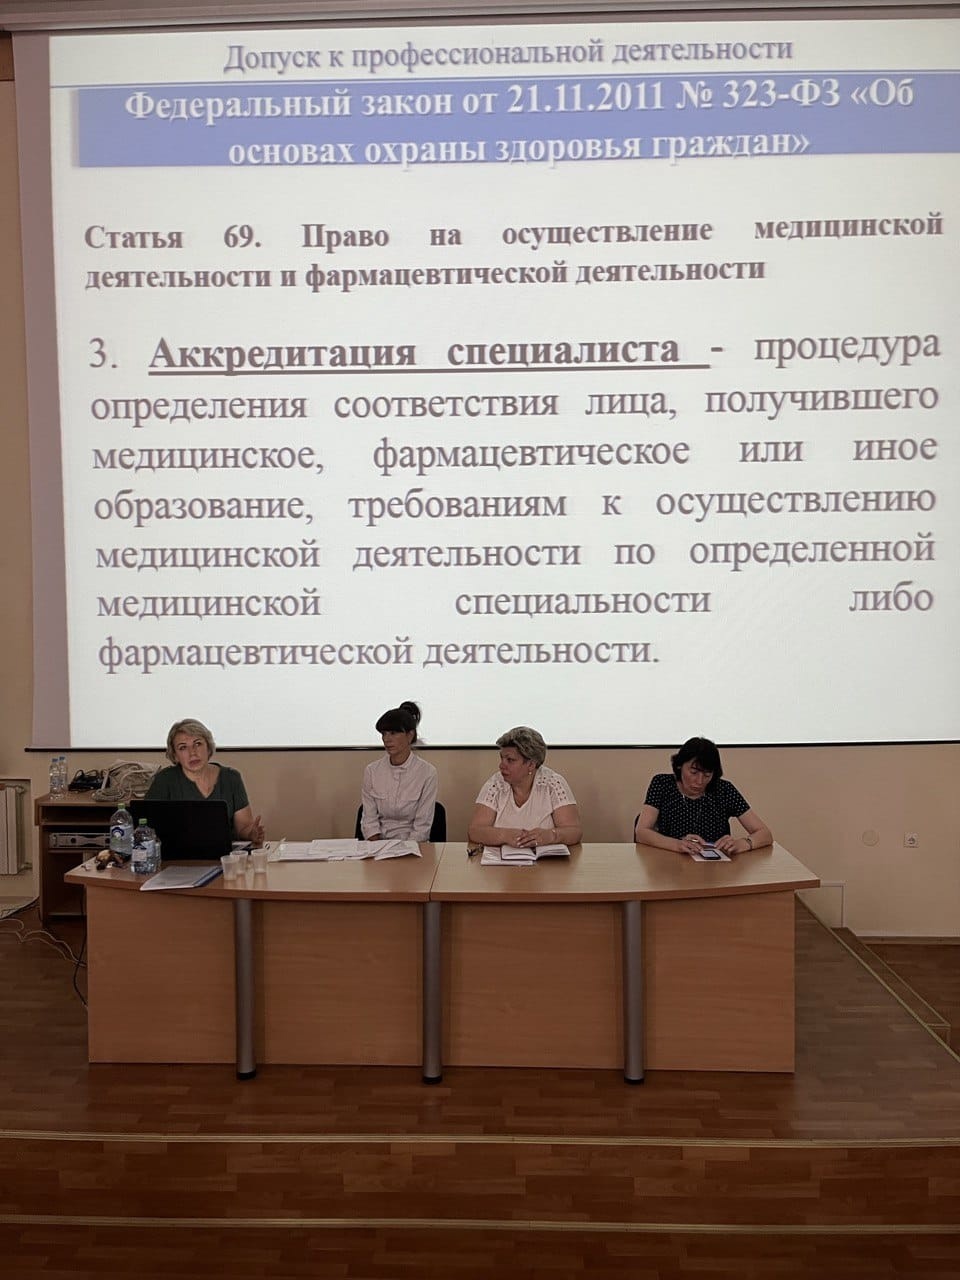 3 августа в ДНР стартовали мероприятия в рамках выездного дня специалиста